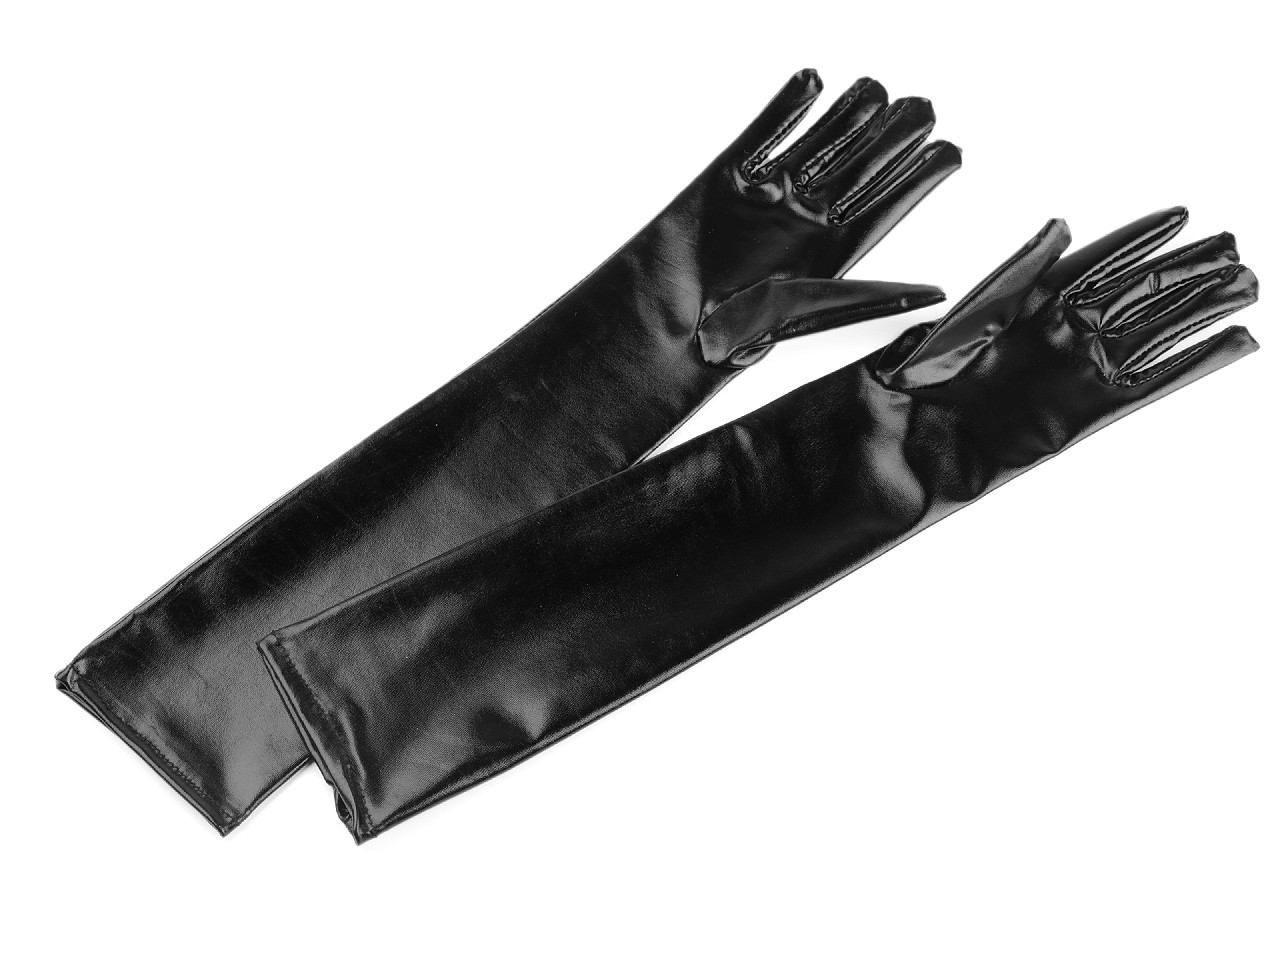 Dlouhé společenské rukavice imitace latexu, barva černá